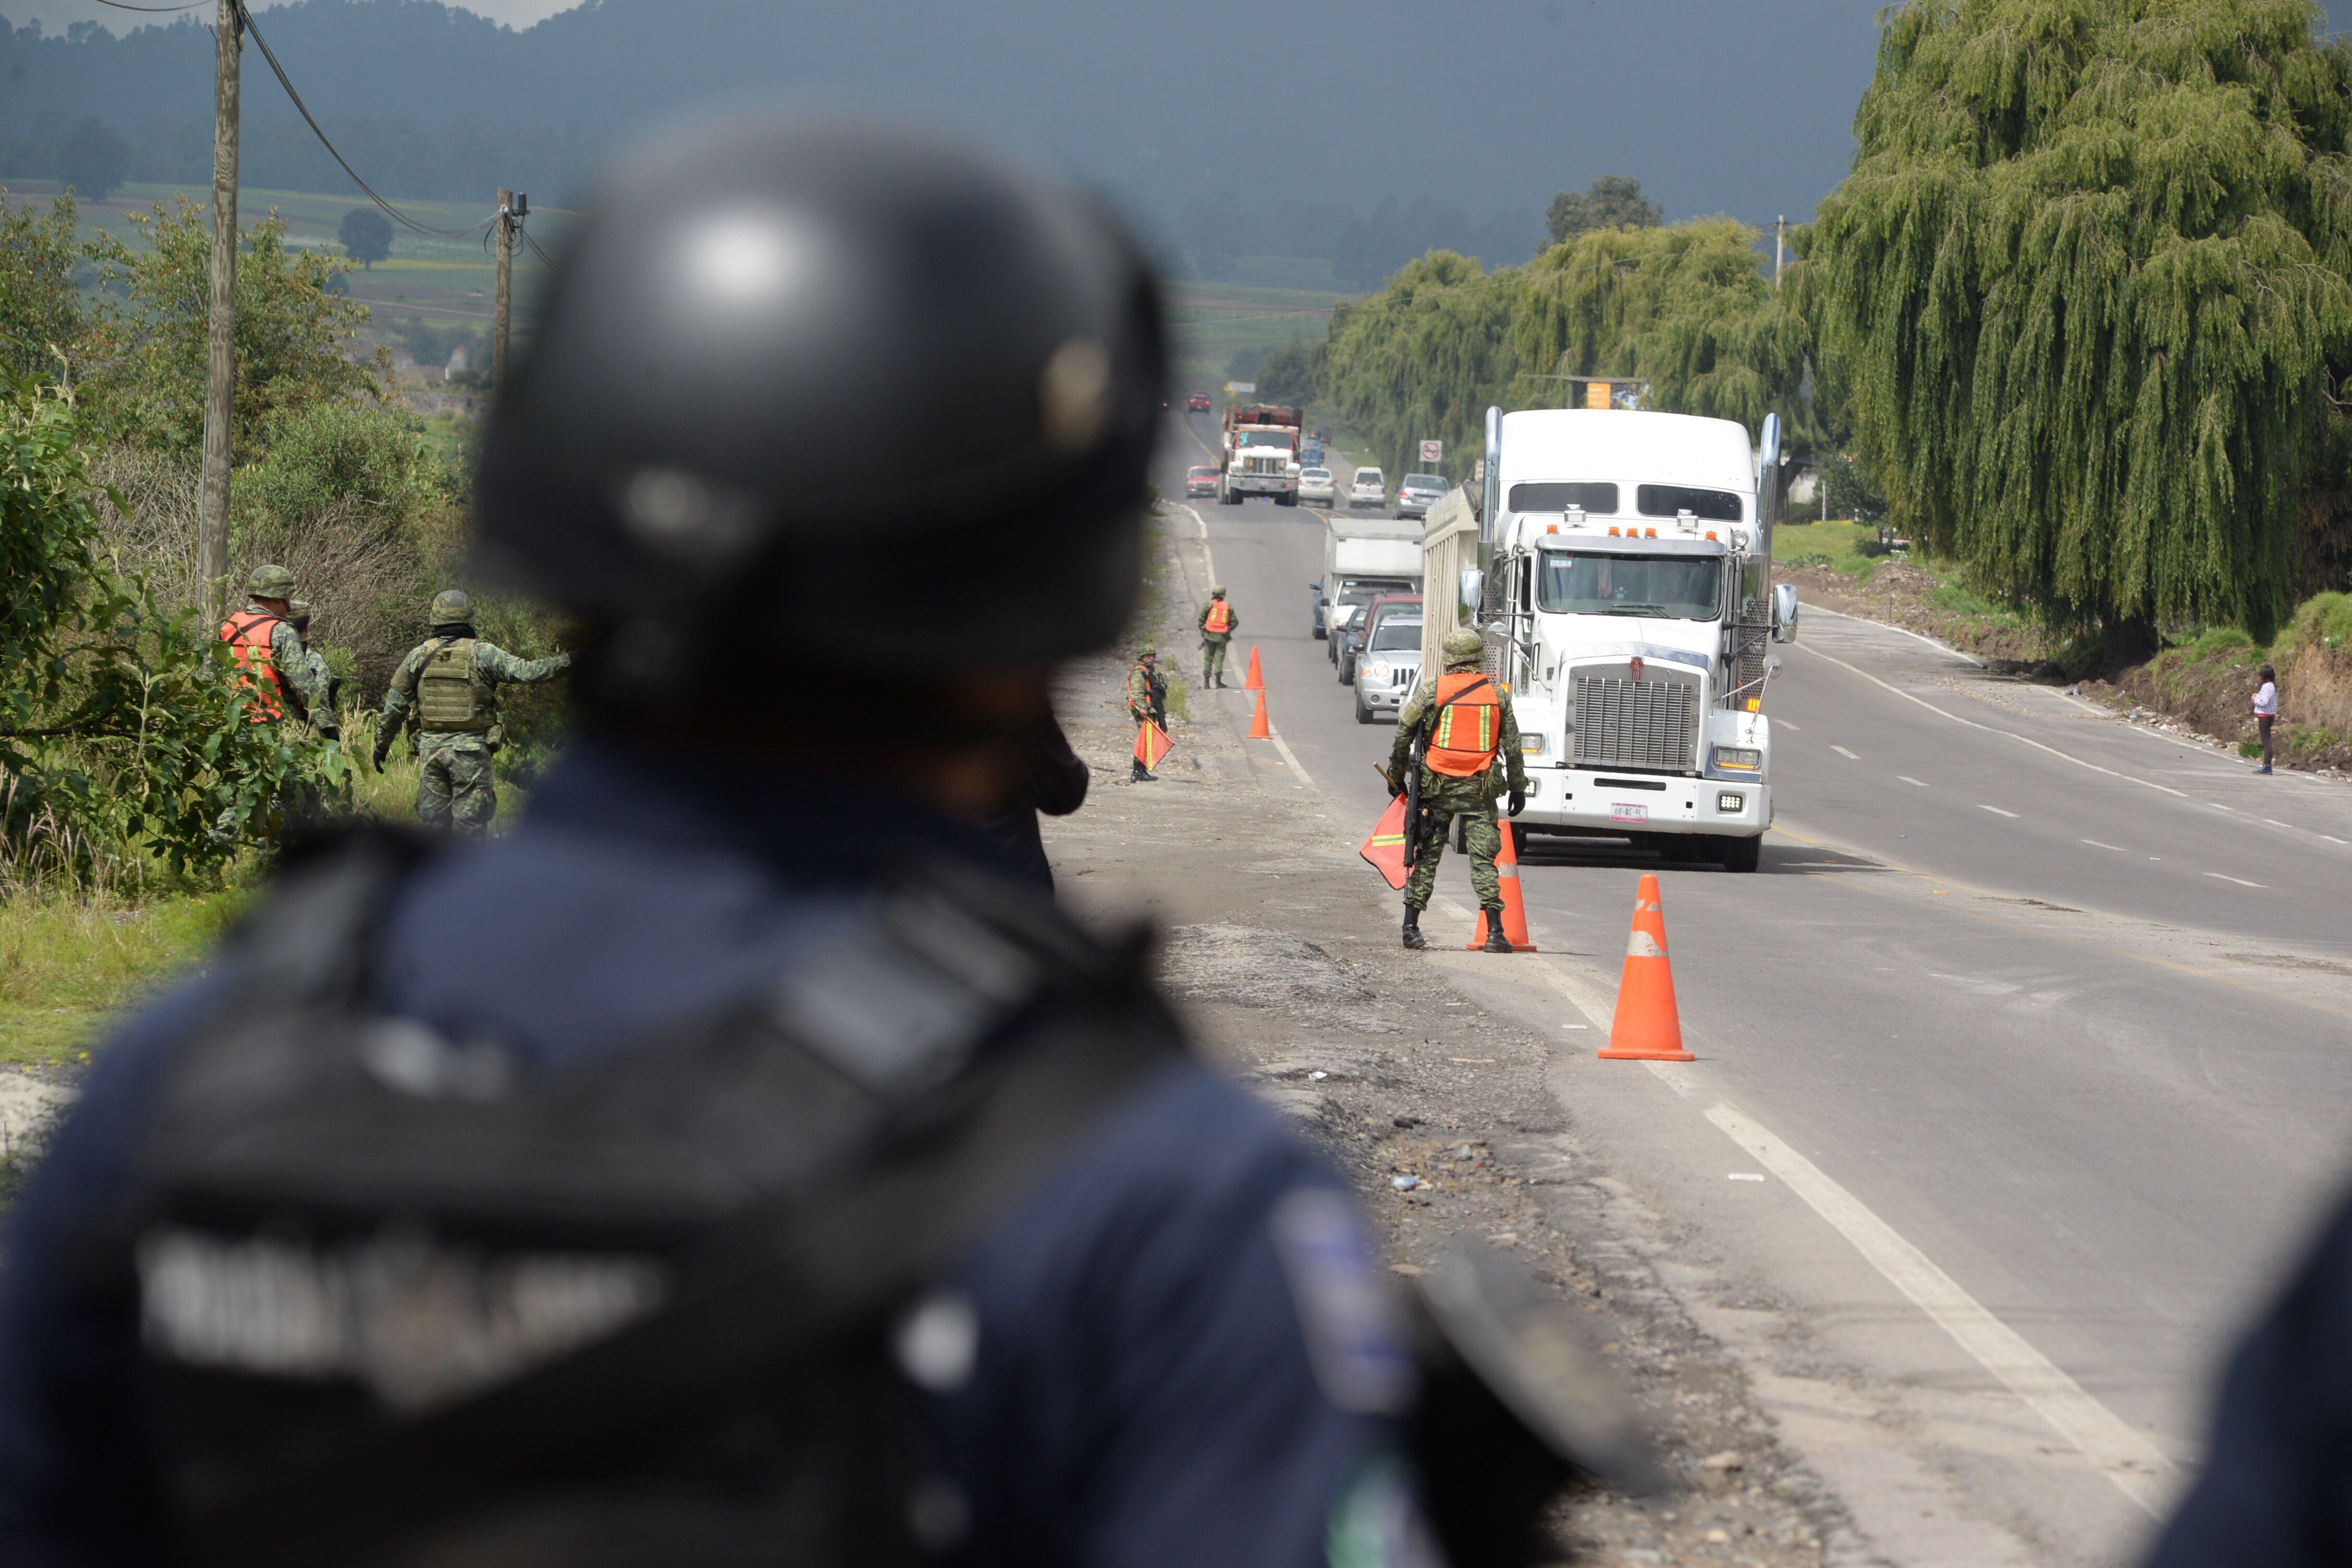 El PACIC contempla el fortalecimiento en la seguridad de carreteras. (Foto: ARTEMIO GUERRA BAZ /CUARTOSCURO.COM)